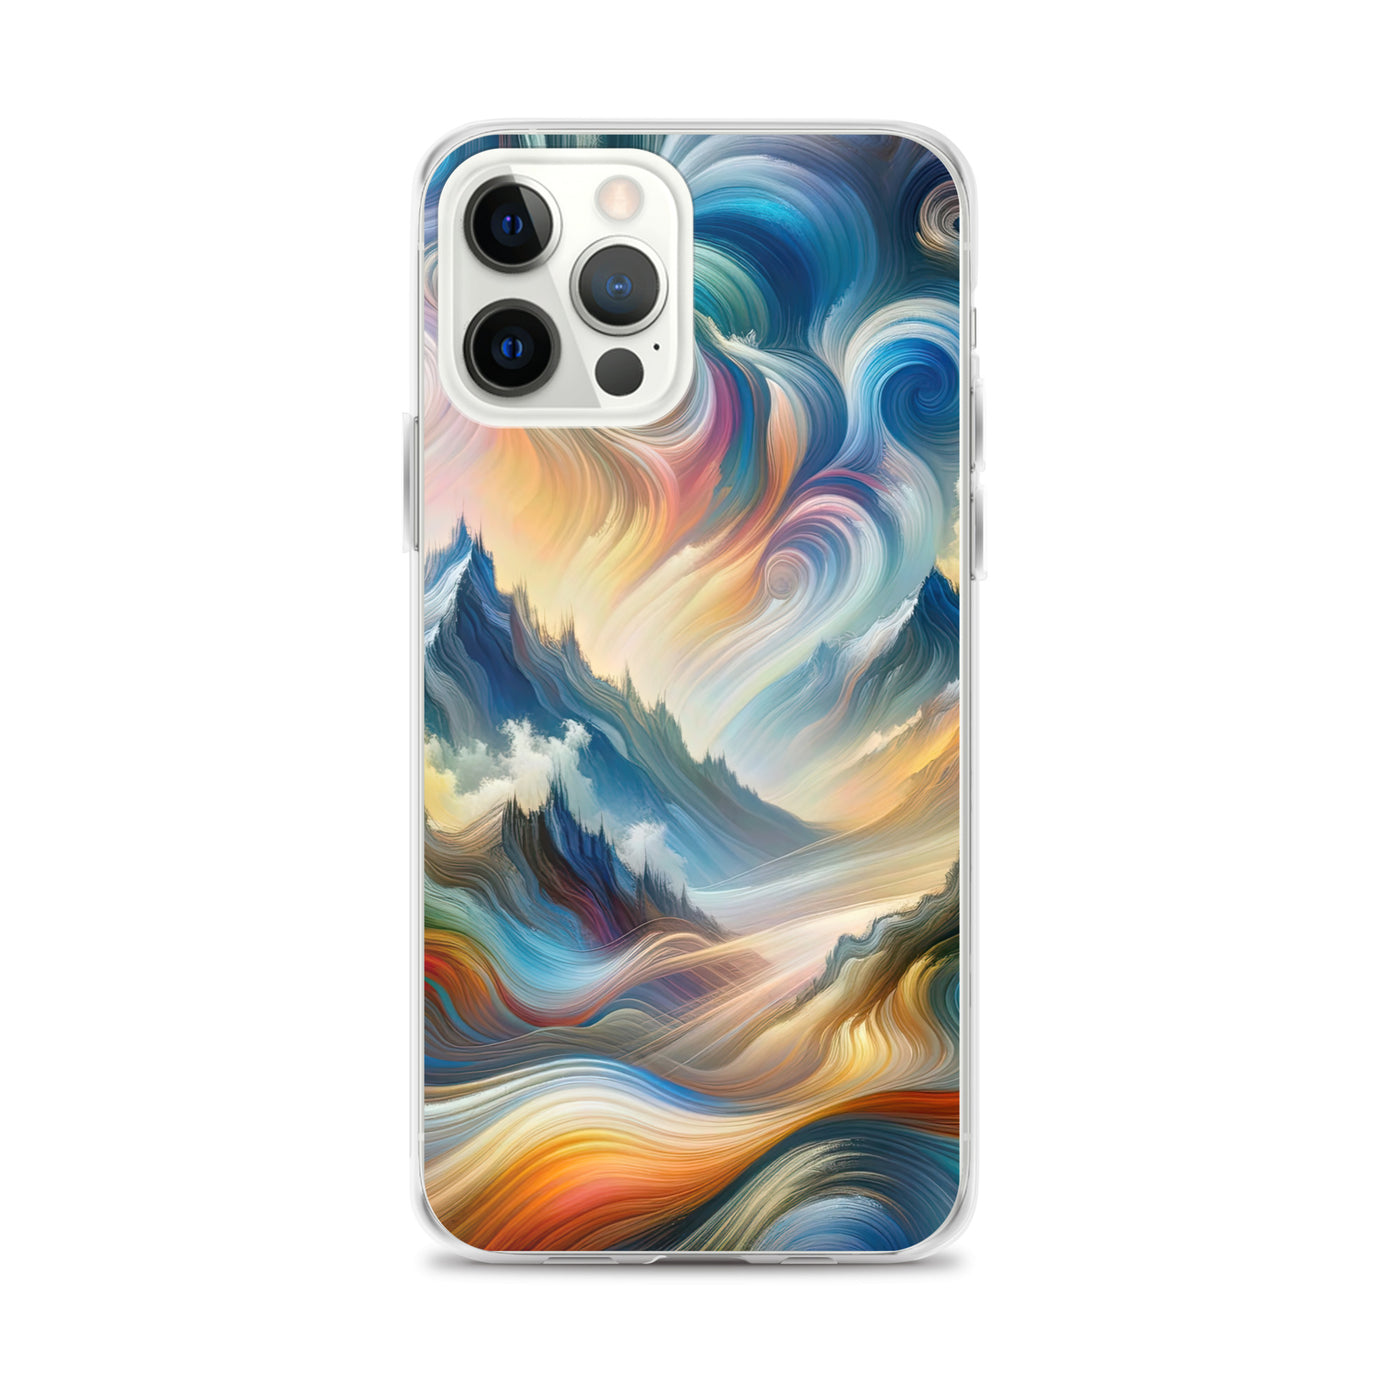 Ätherische schöne Alpen in lebendigen Farbwirbeln - Abstrakte Berge - iPhone Schutzhülle (durchsichtig) berge xxx yyy zzz iPhone 12 Pro Max